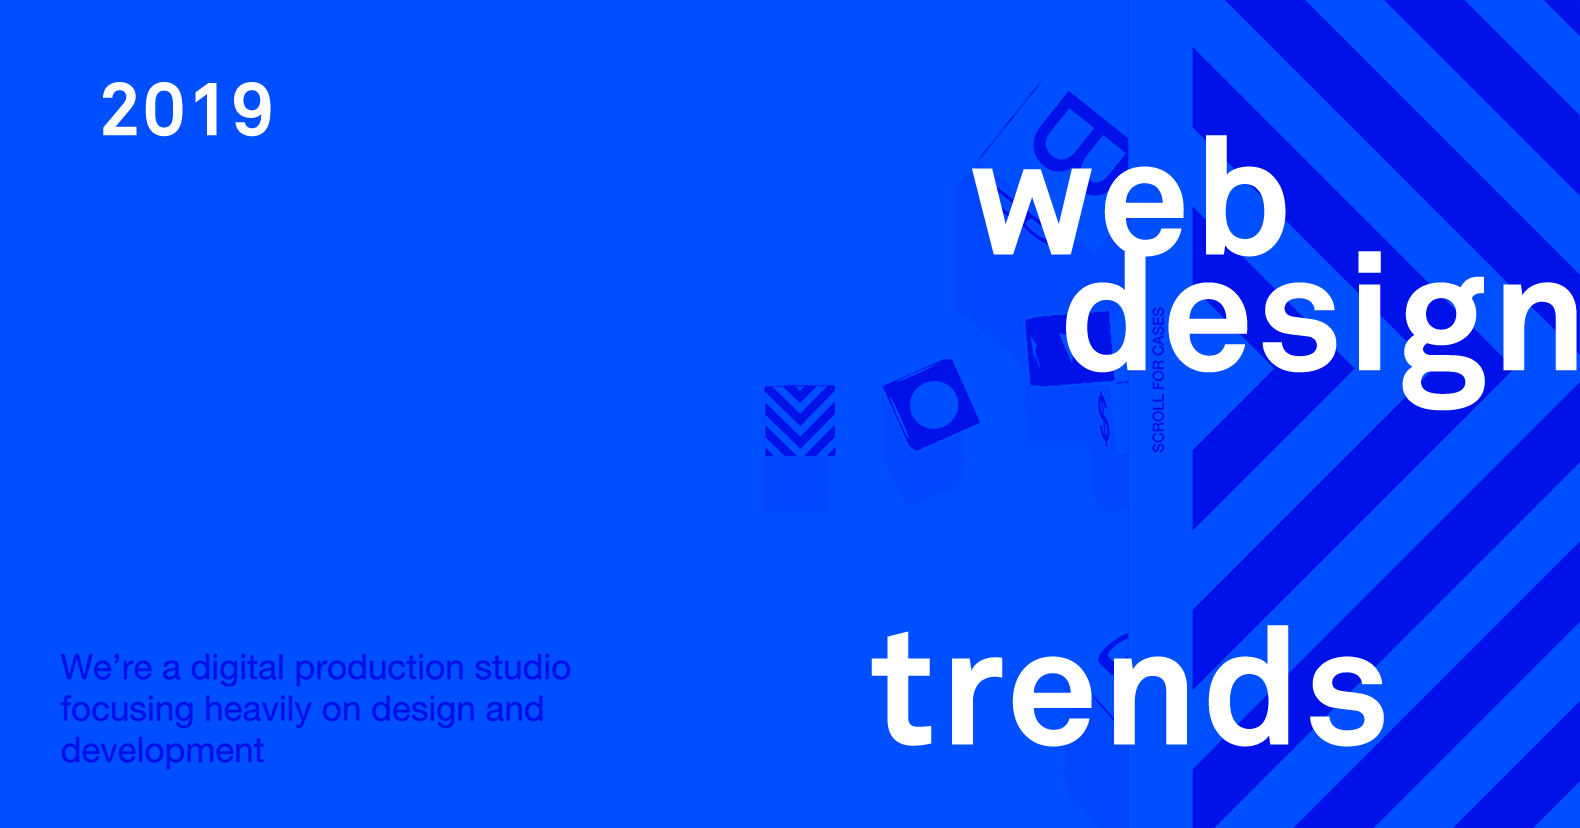 Иллюстрация к статье: Какие тренды веб-дизайна нас ждут в 2019 году?